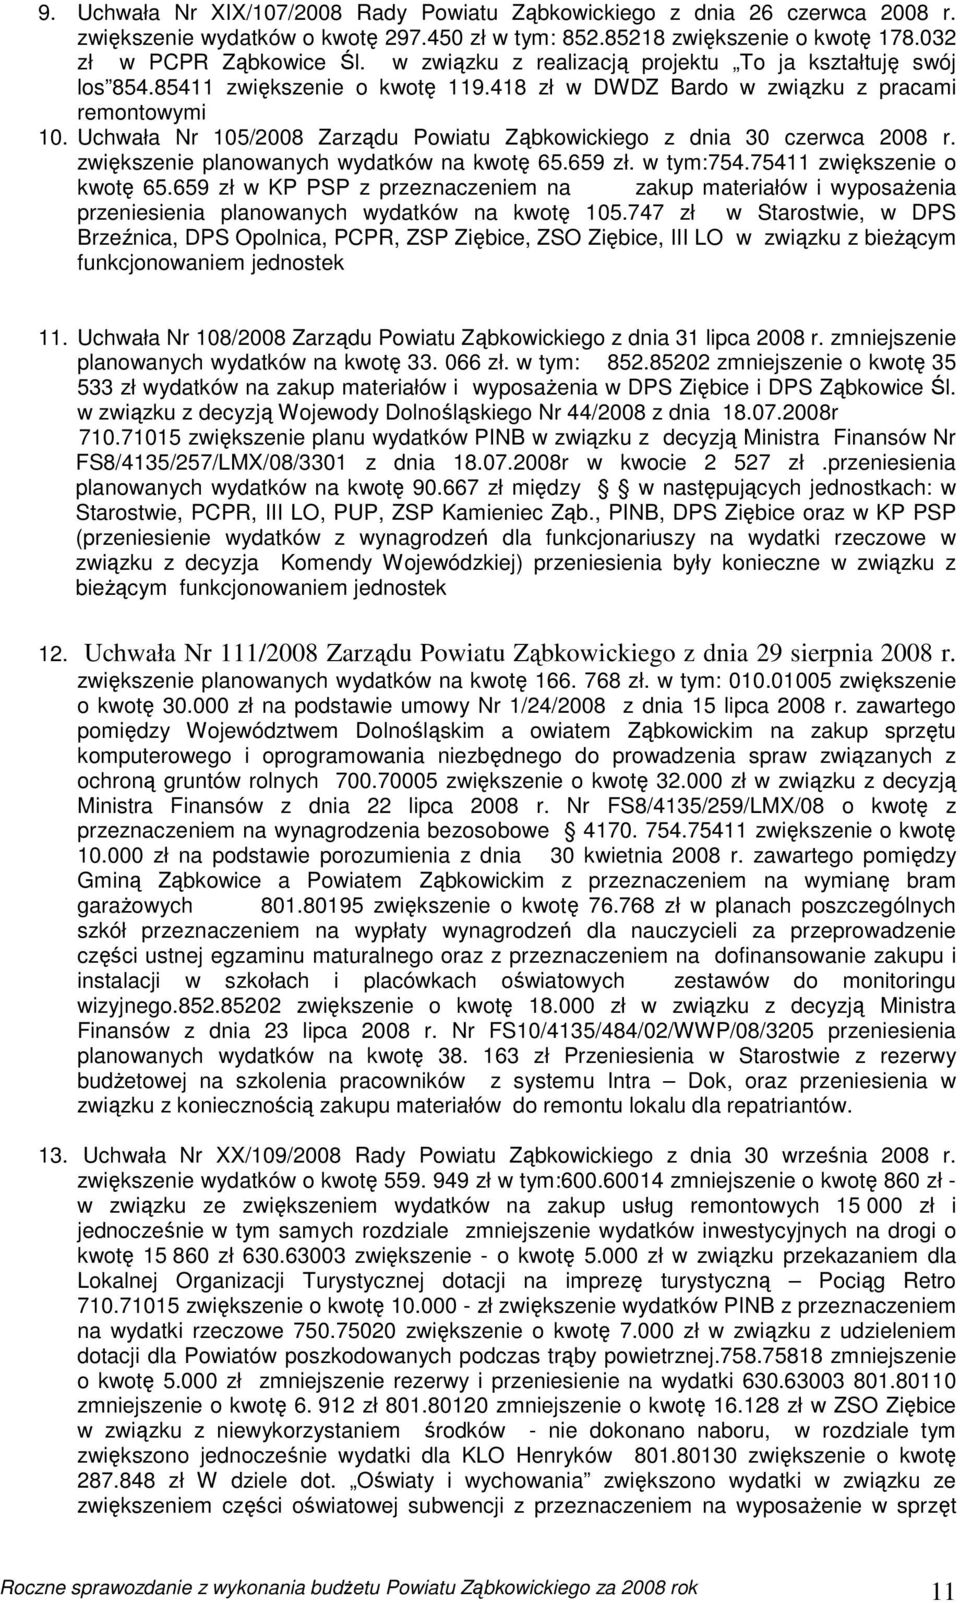 Uchwała Nr 105/2008 Zarządu Powiatu Ząbkowickiego z dnia 30 czerwca 2008 r. zwiększenie planowanych wydatków na kwotę 65.659 zł. w tym:754.75411 zwiększenie o kwotę 65.